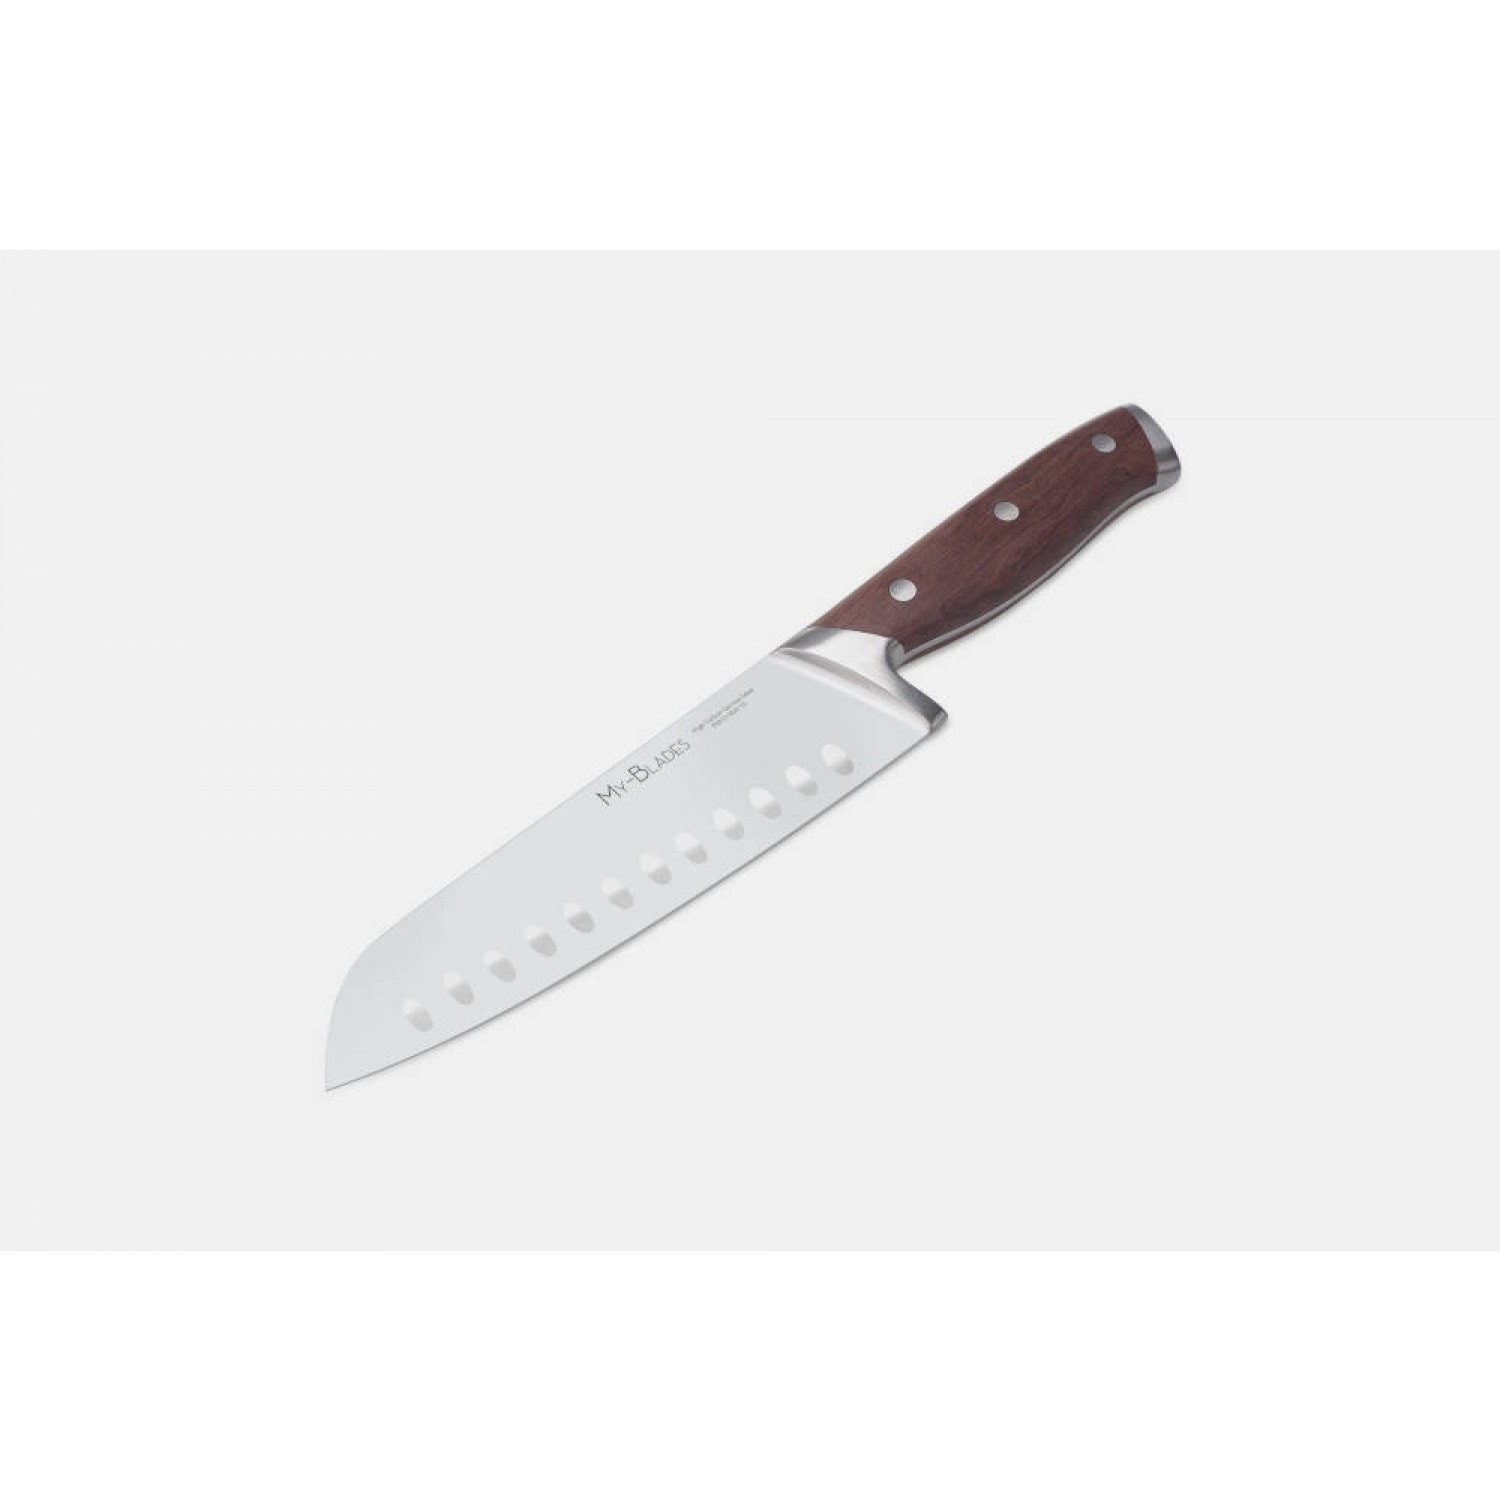 MY-BLADES Santoku Knife, rosewood handle